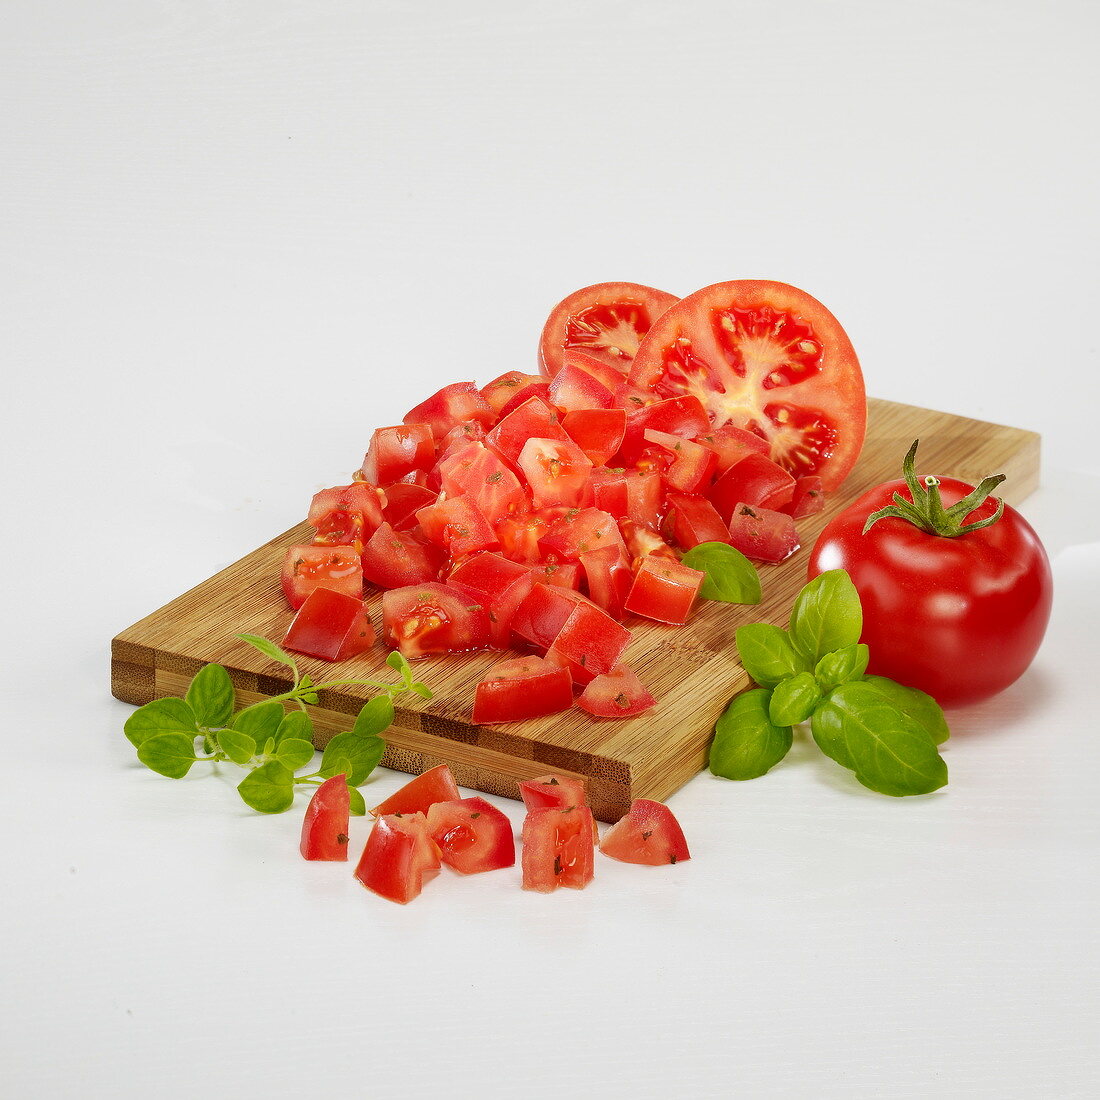 Tomaten in Würfel schneiden